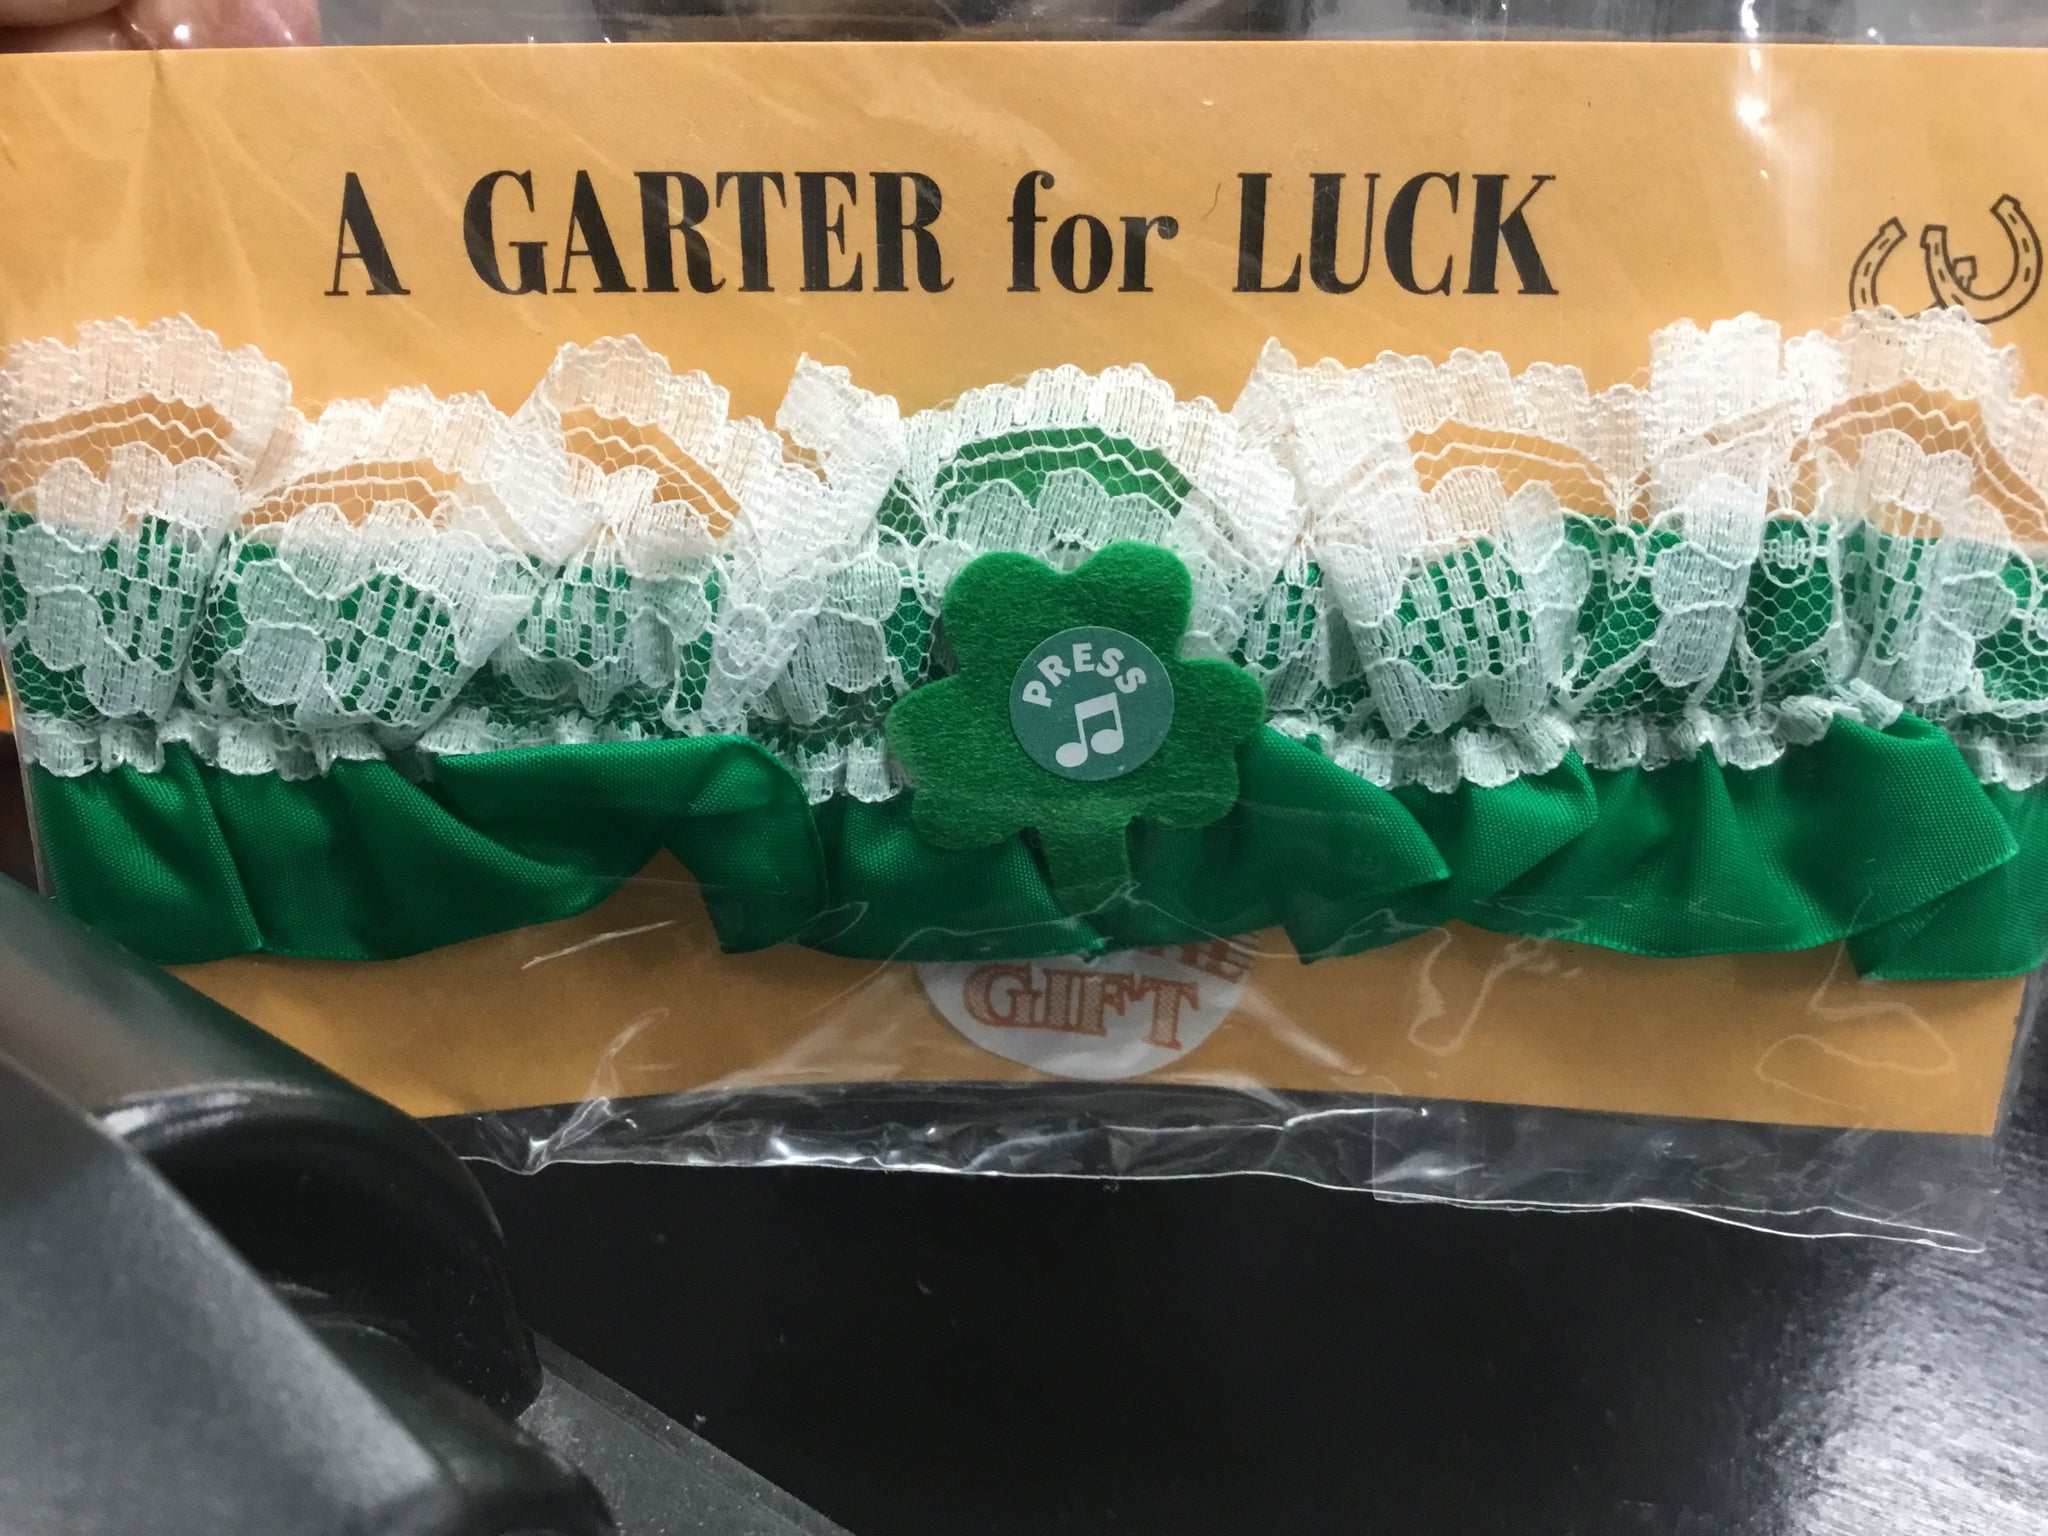 Garter for luck